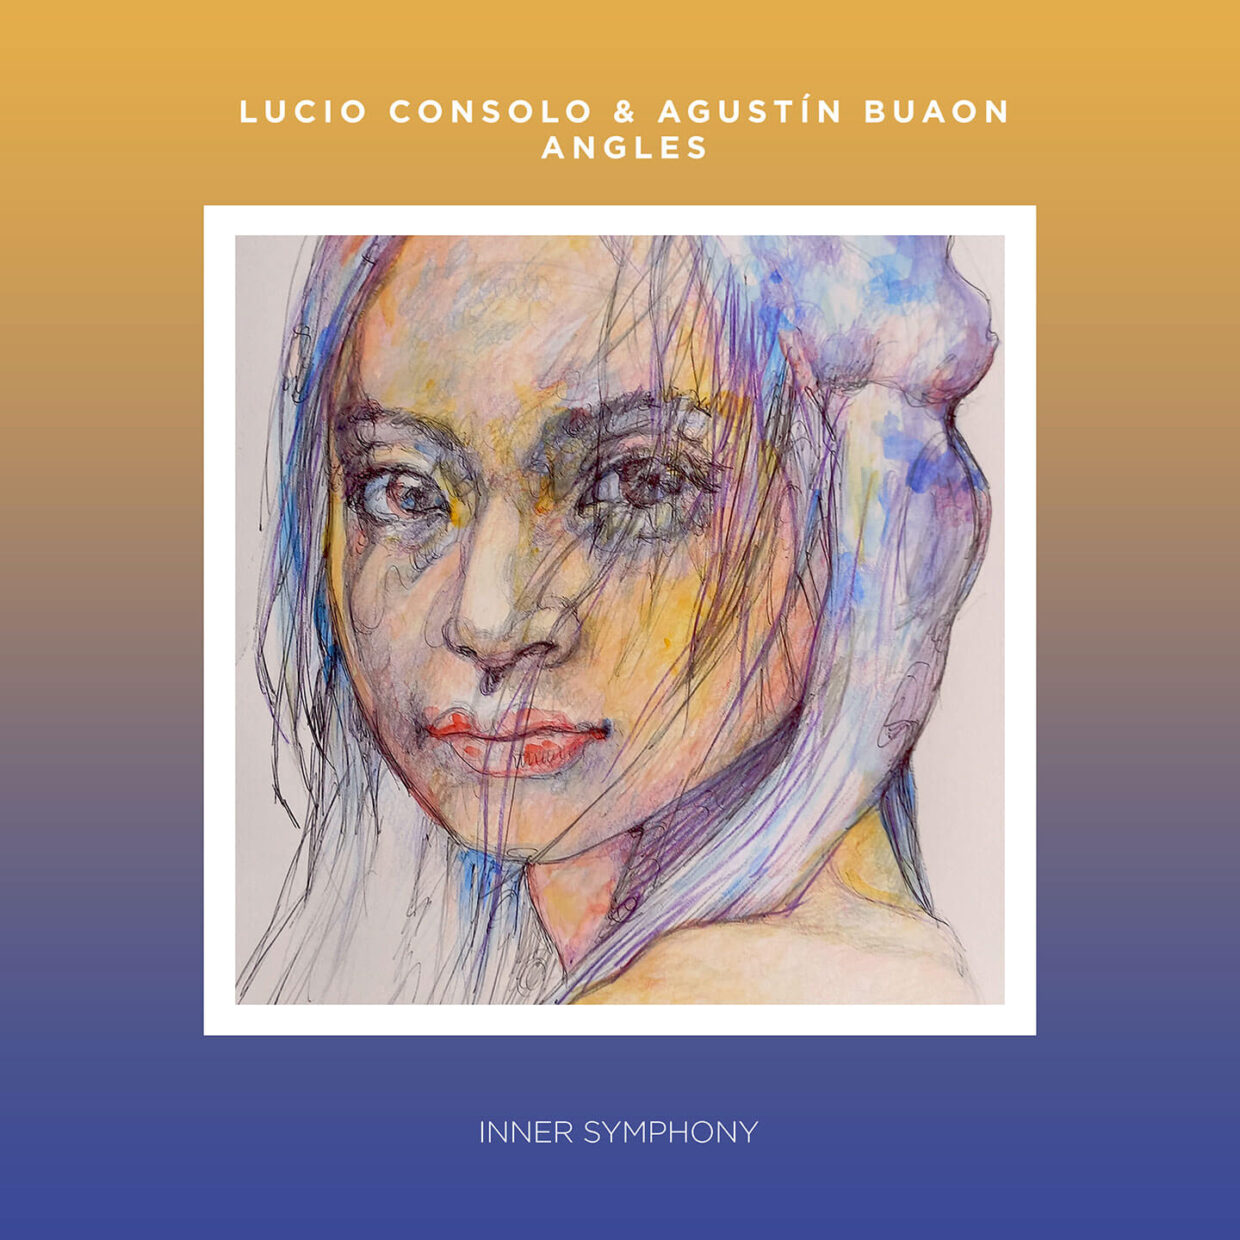 IS064_Lucio Consolo & Agustín Buaon - Angles